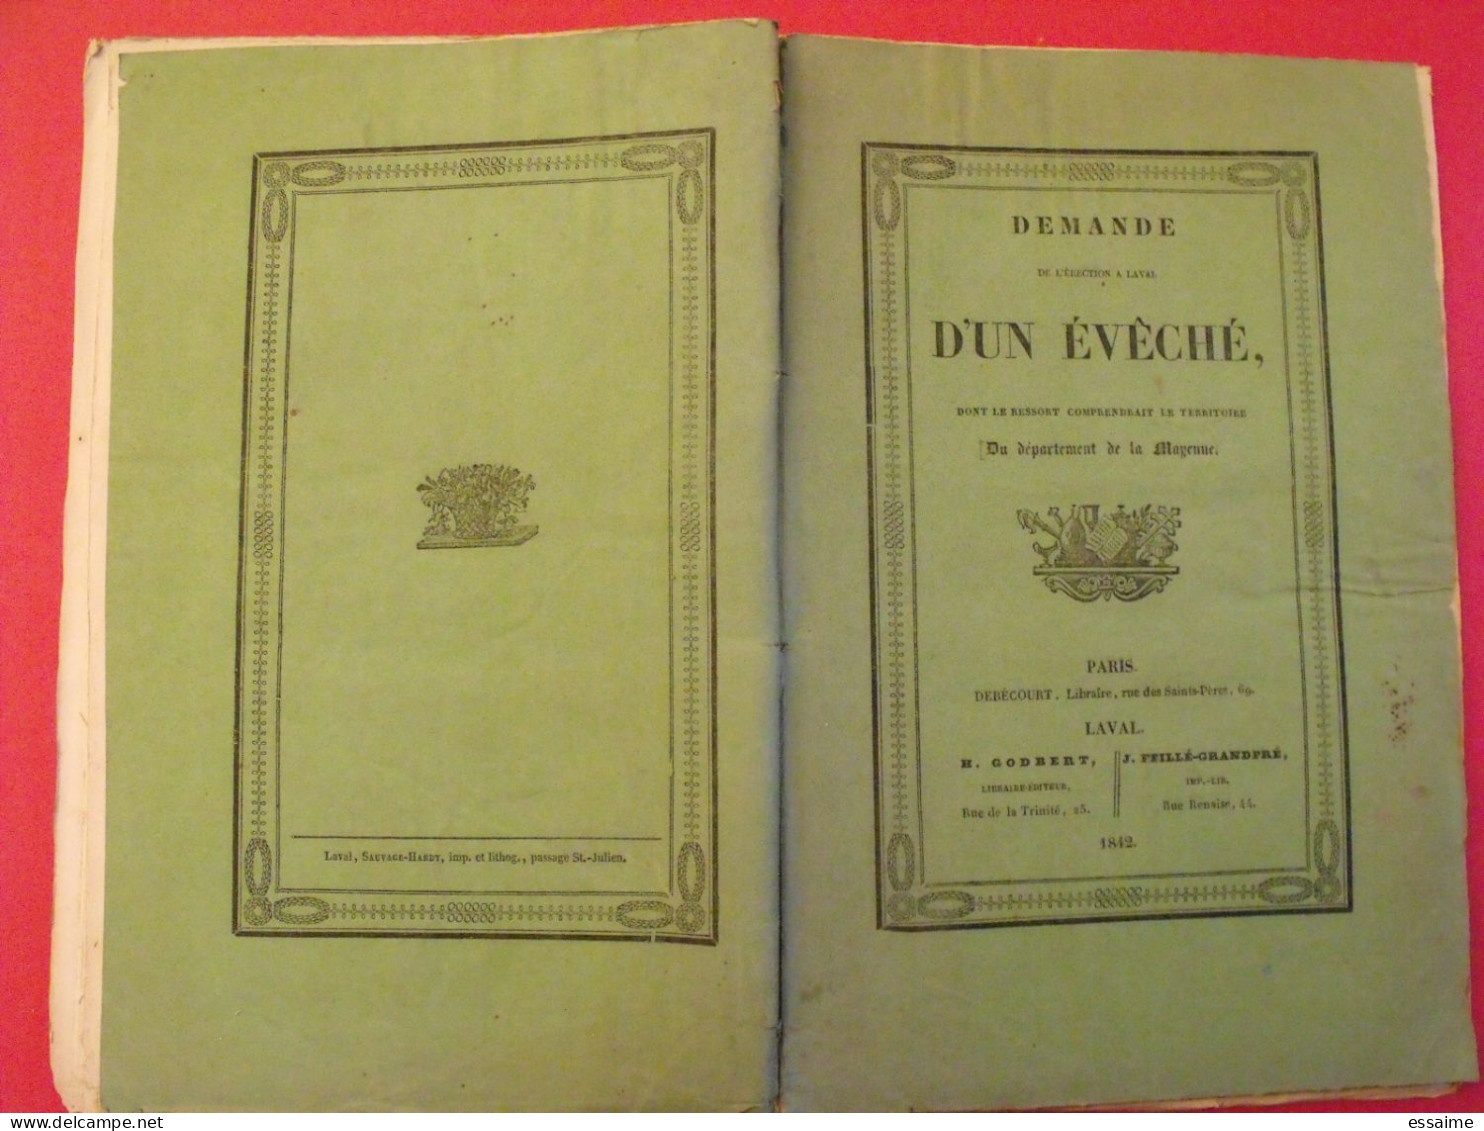 Demande De L'érection à Laval D'un évêché. Mayenne. Débecourt 1842 - Pays De Loire